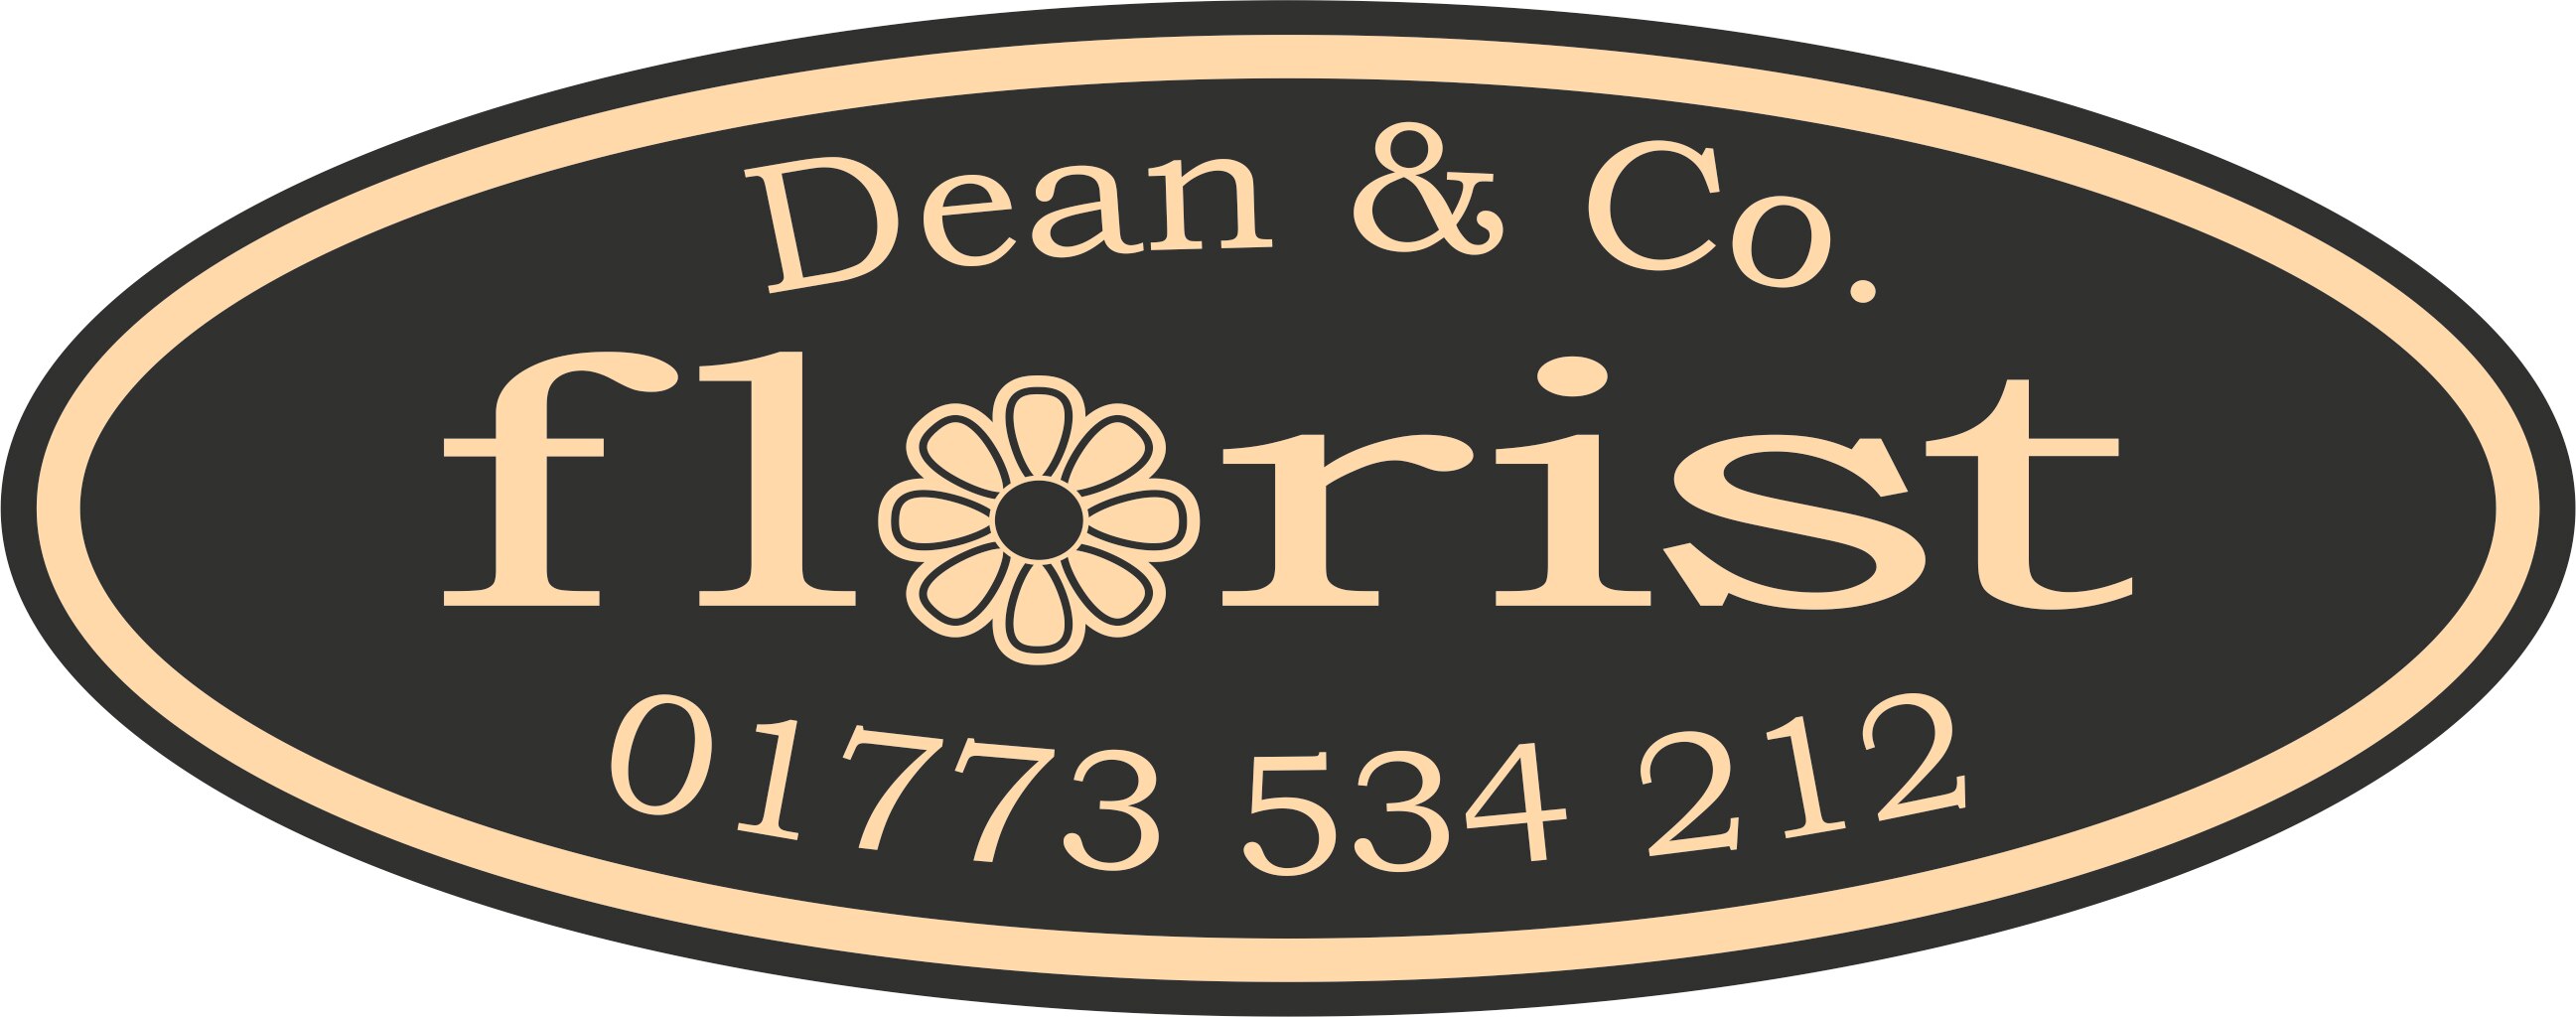 Dean & Co - Logo